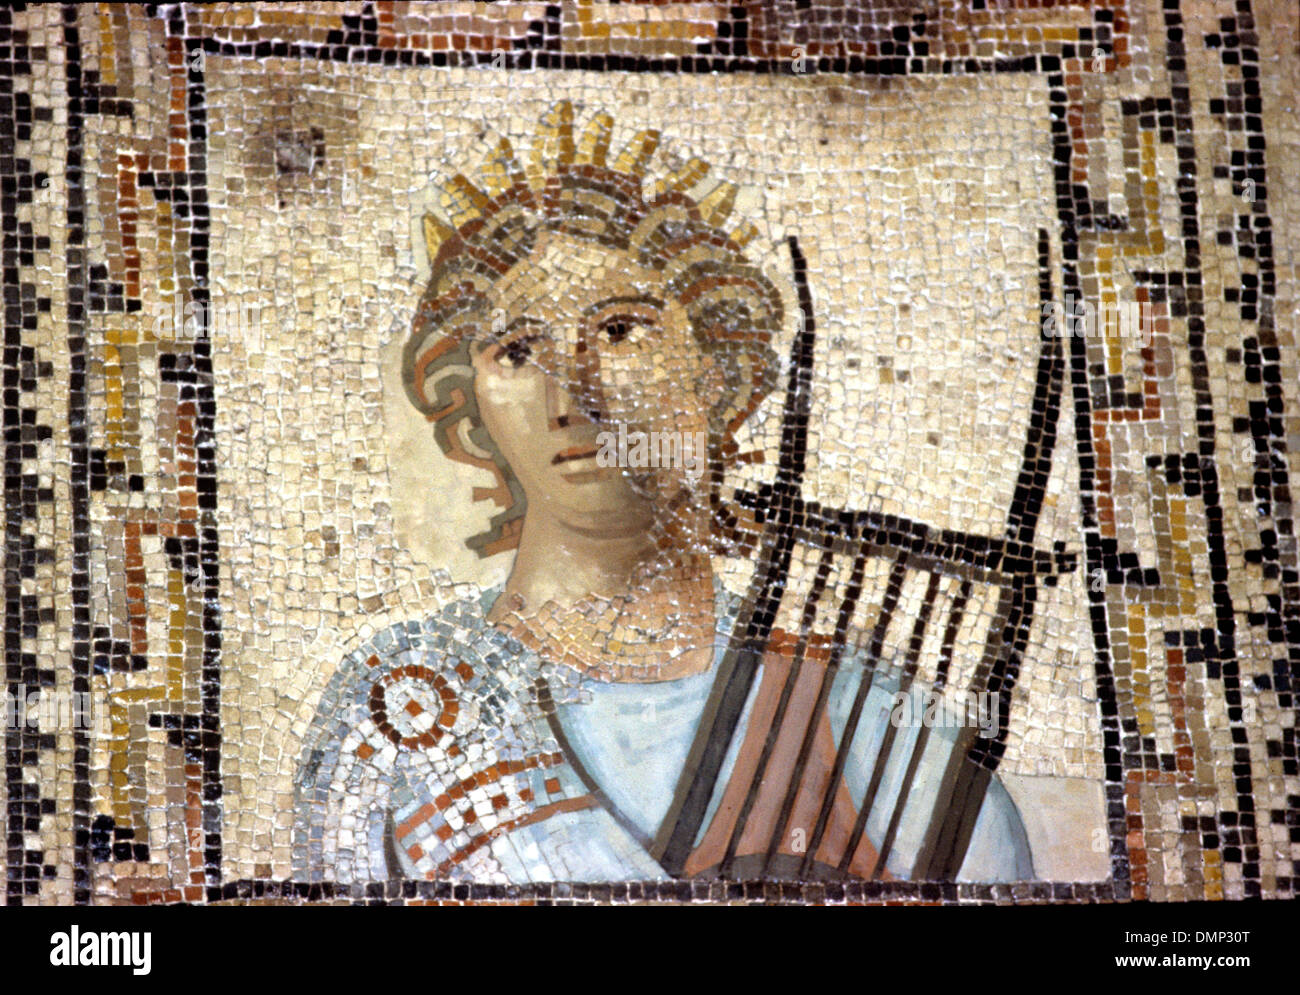 Periodo Romano-German. Mosaico. Terpsichore, musa della lirica, la poesia e la danza con cithara. Foto Stock